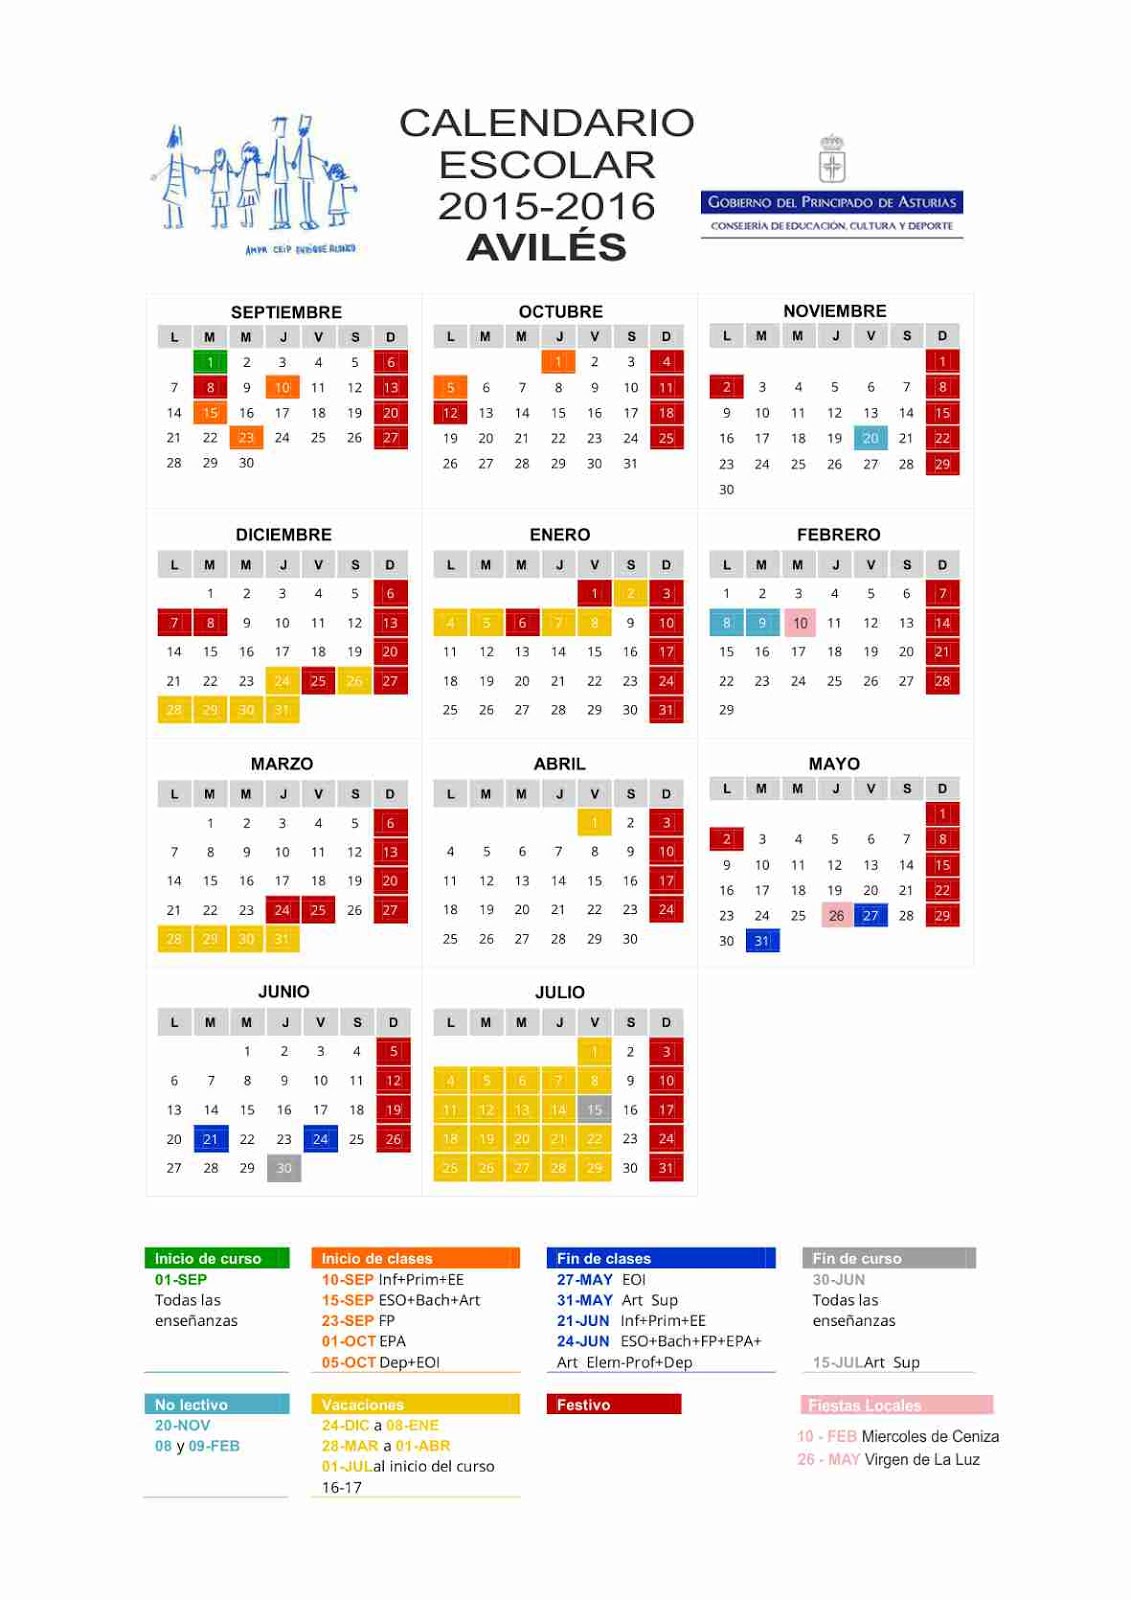 Calendario Avilés 2015-2016